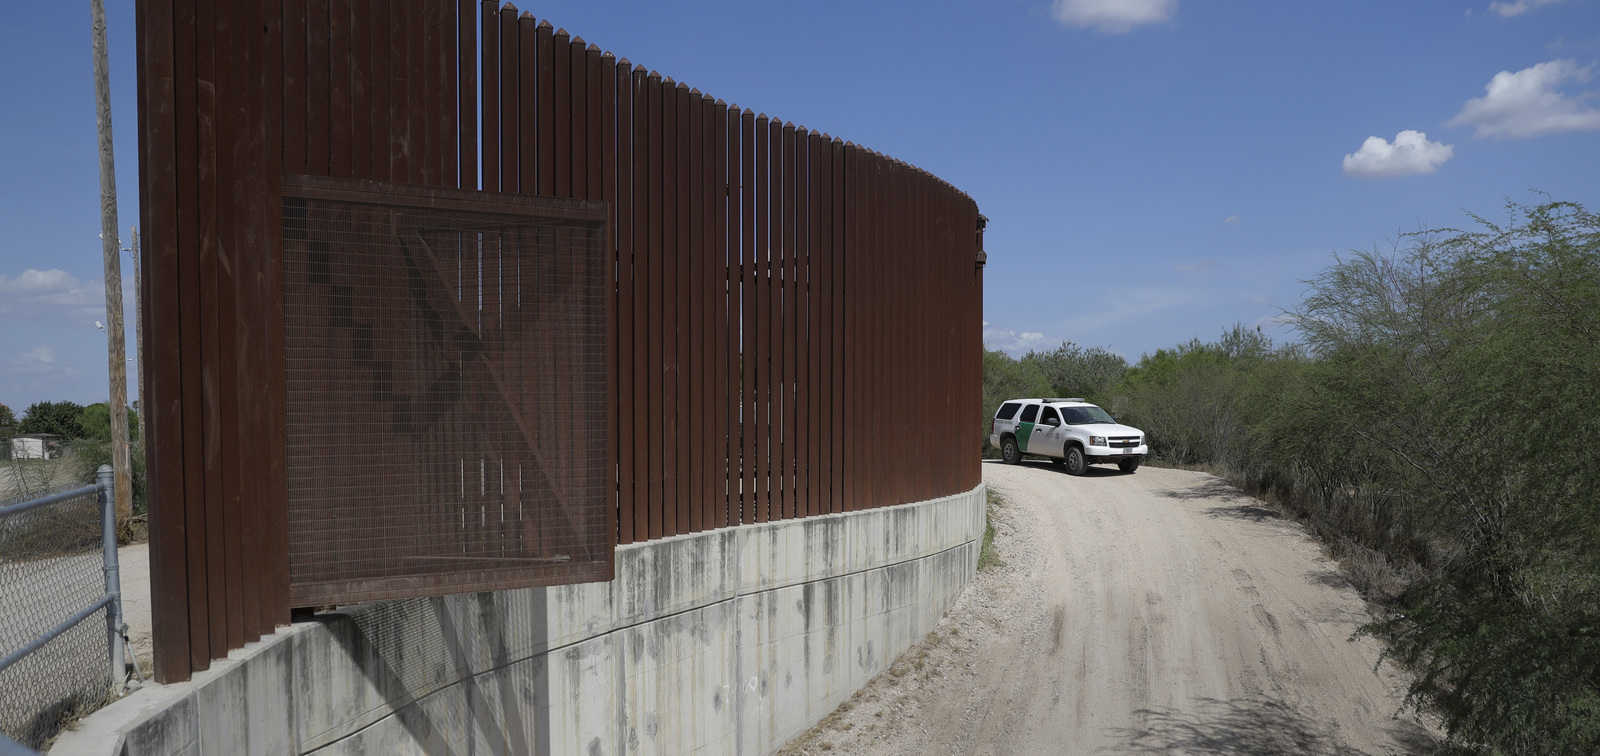 Trump exige unir fuerzas contra migración ilegal